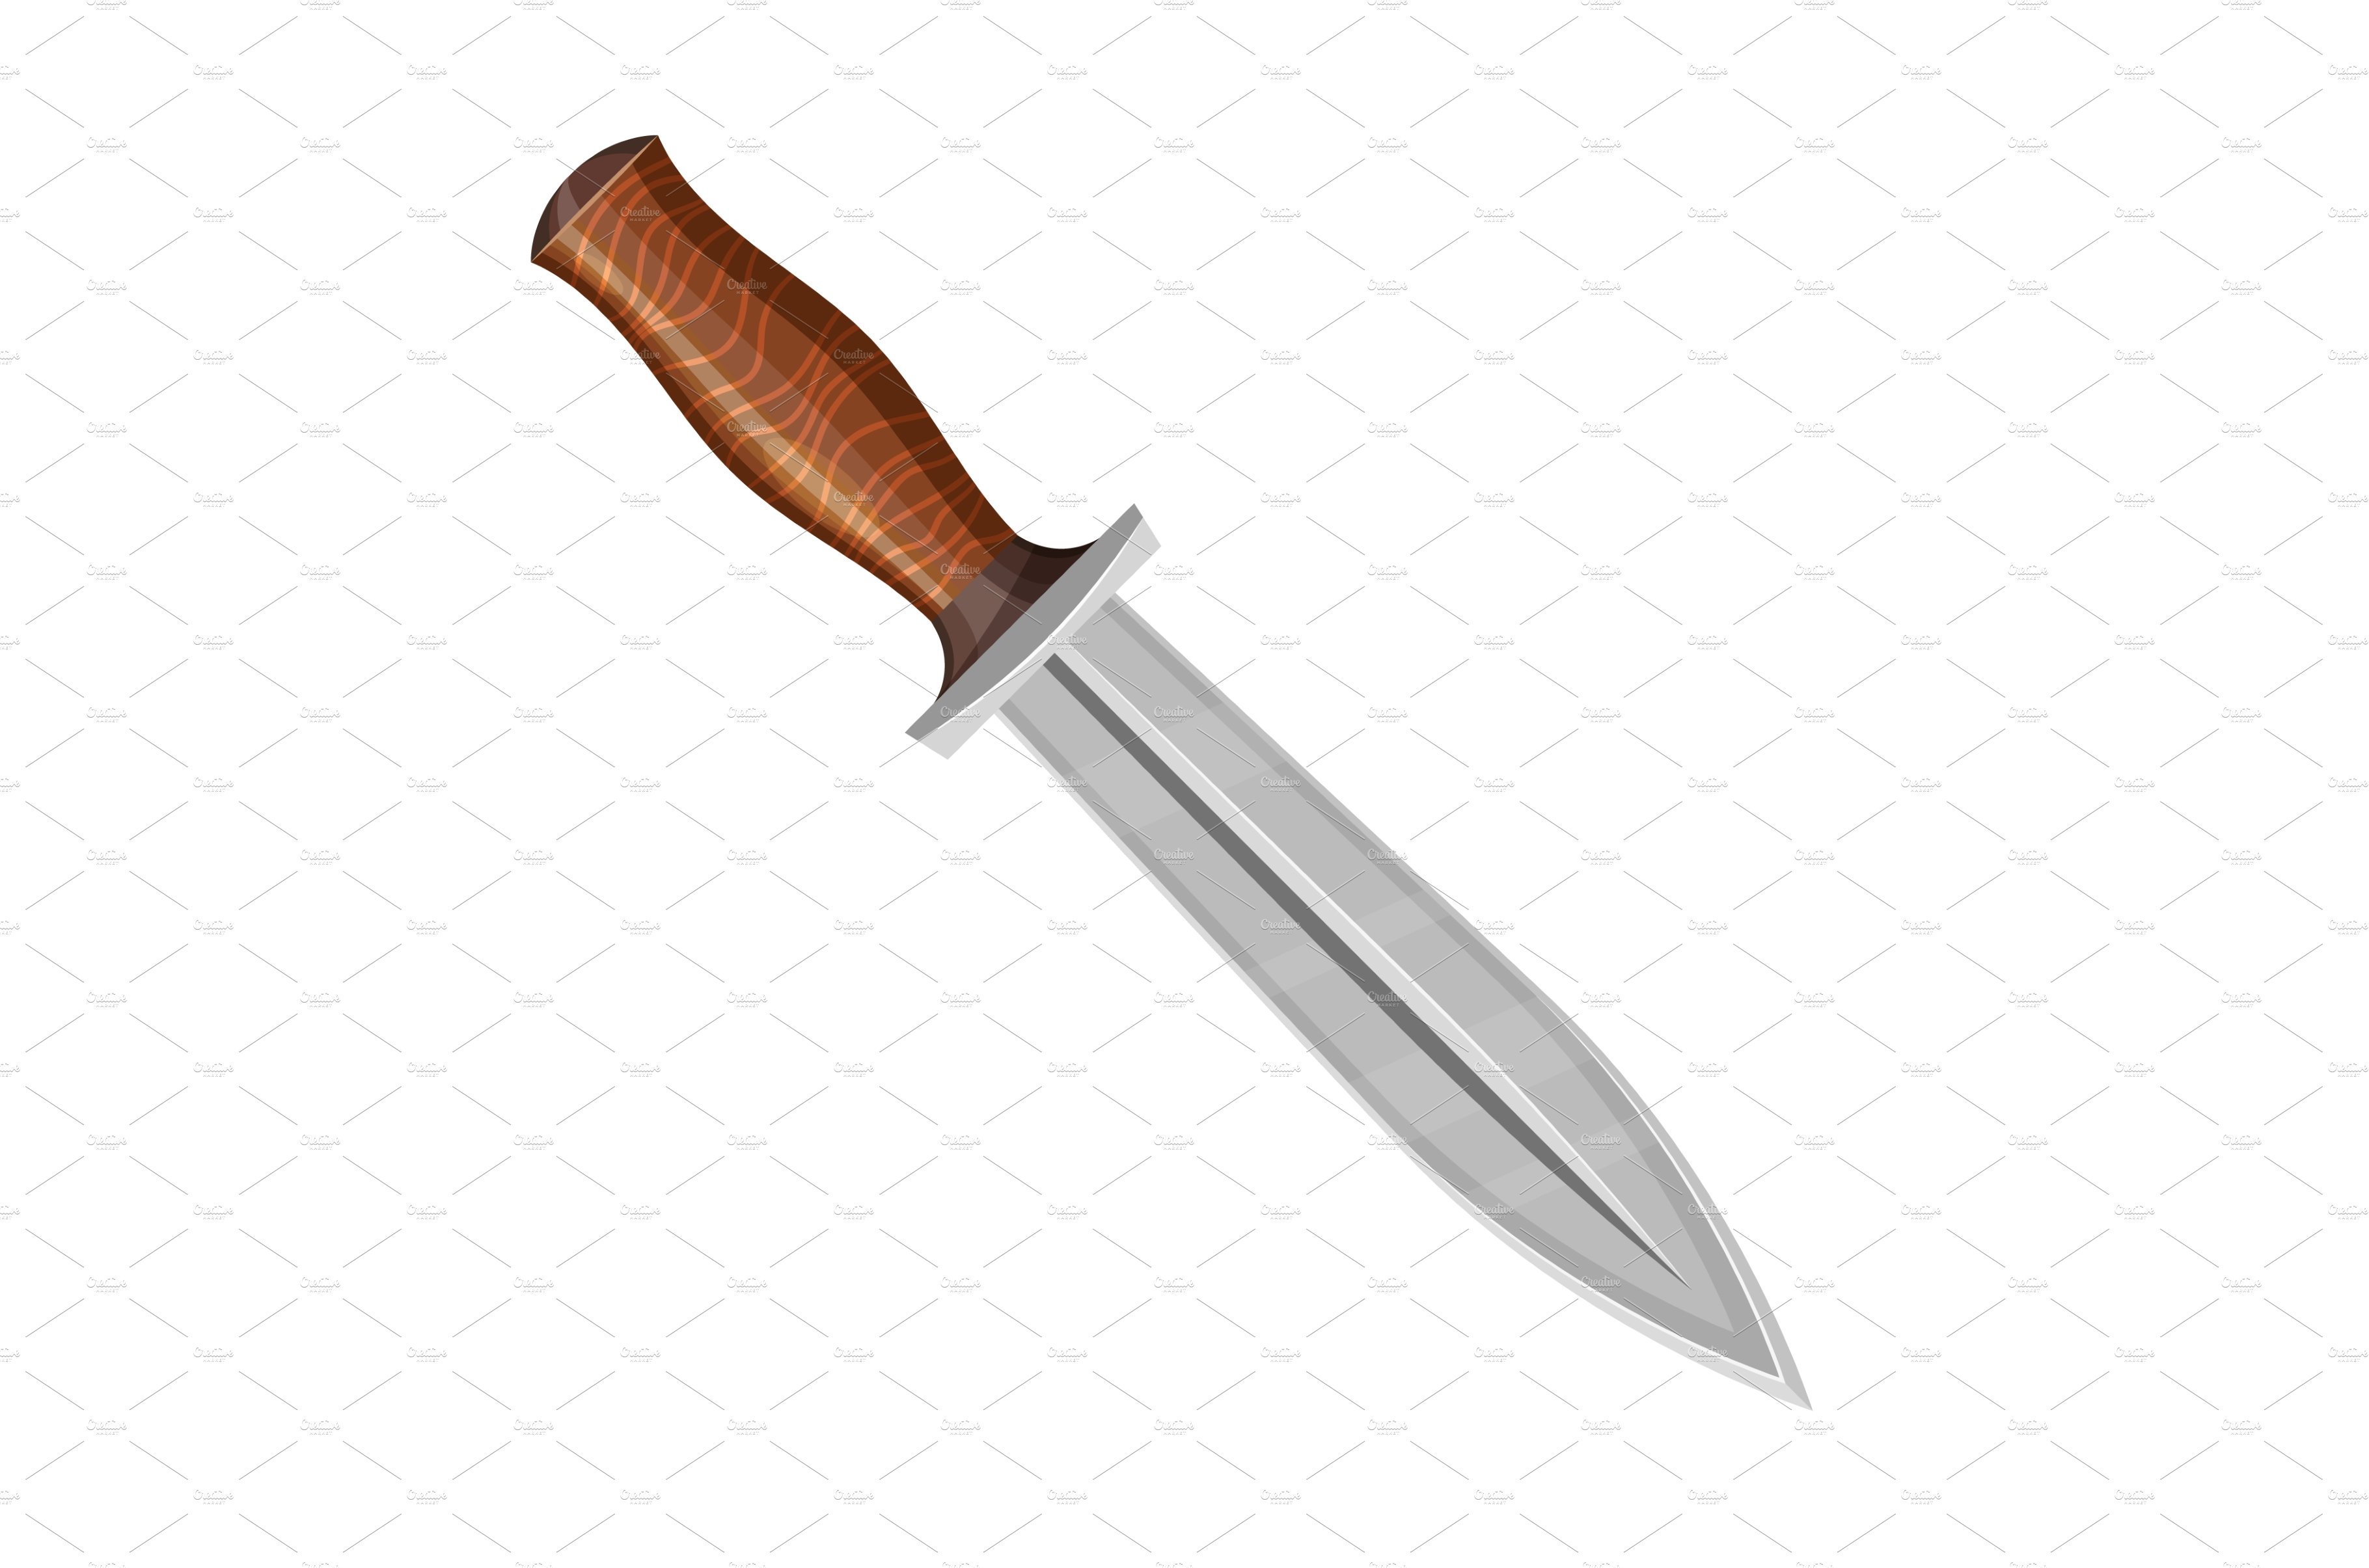 Knife dagger, pocketknife blade or cover image.